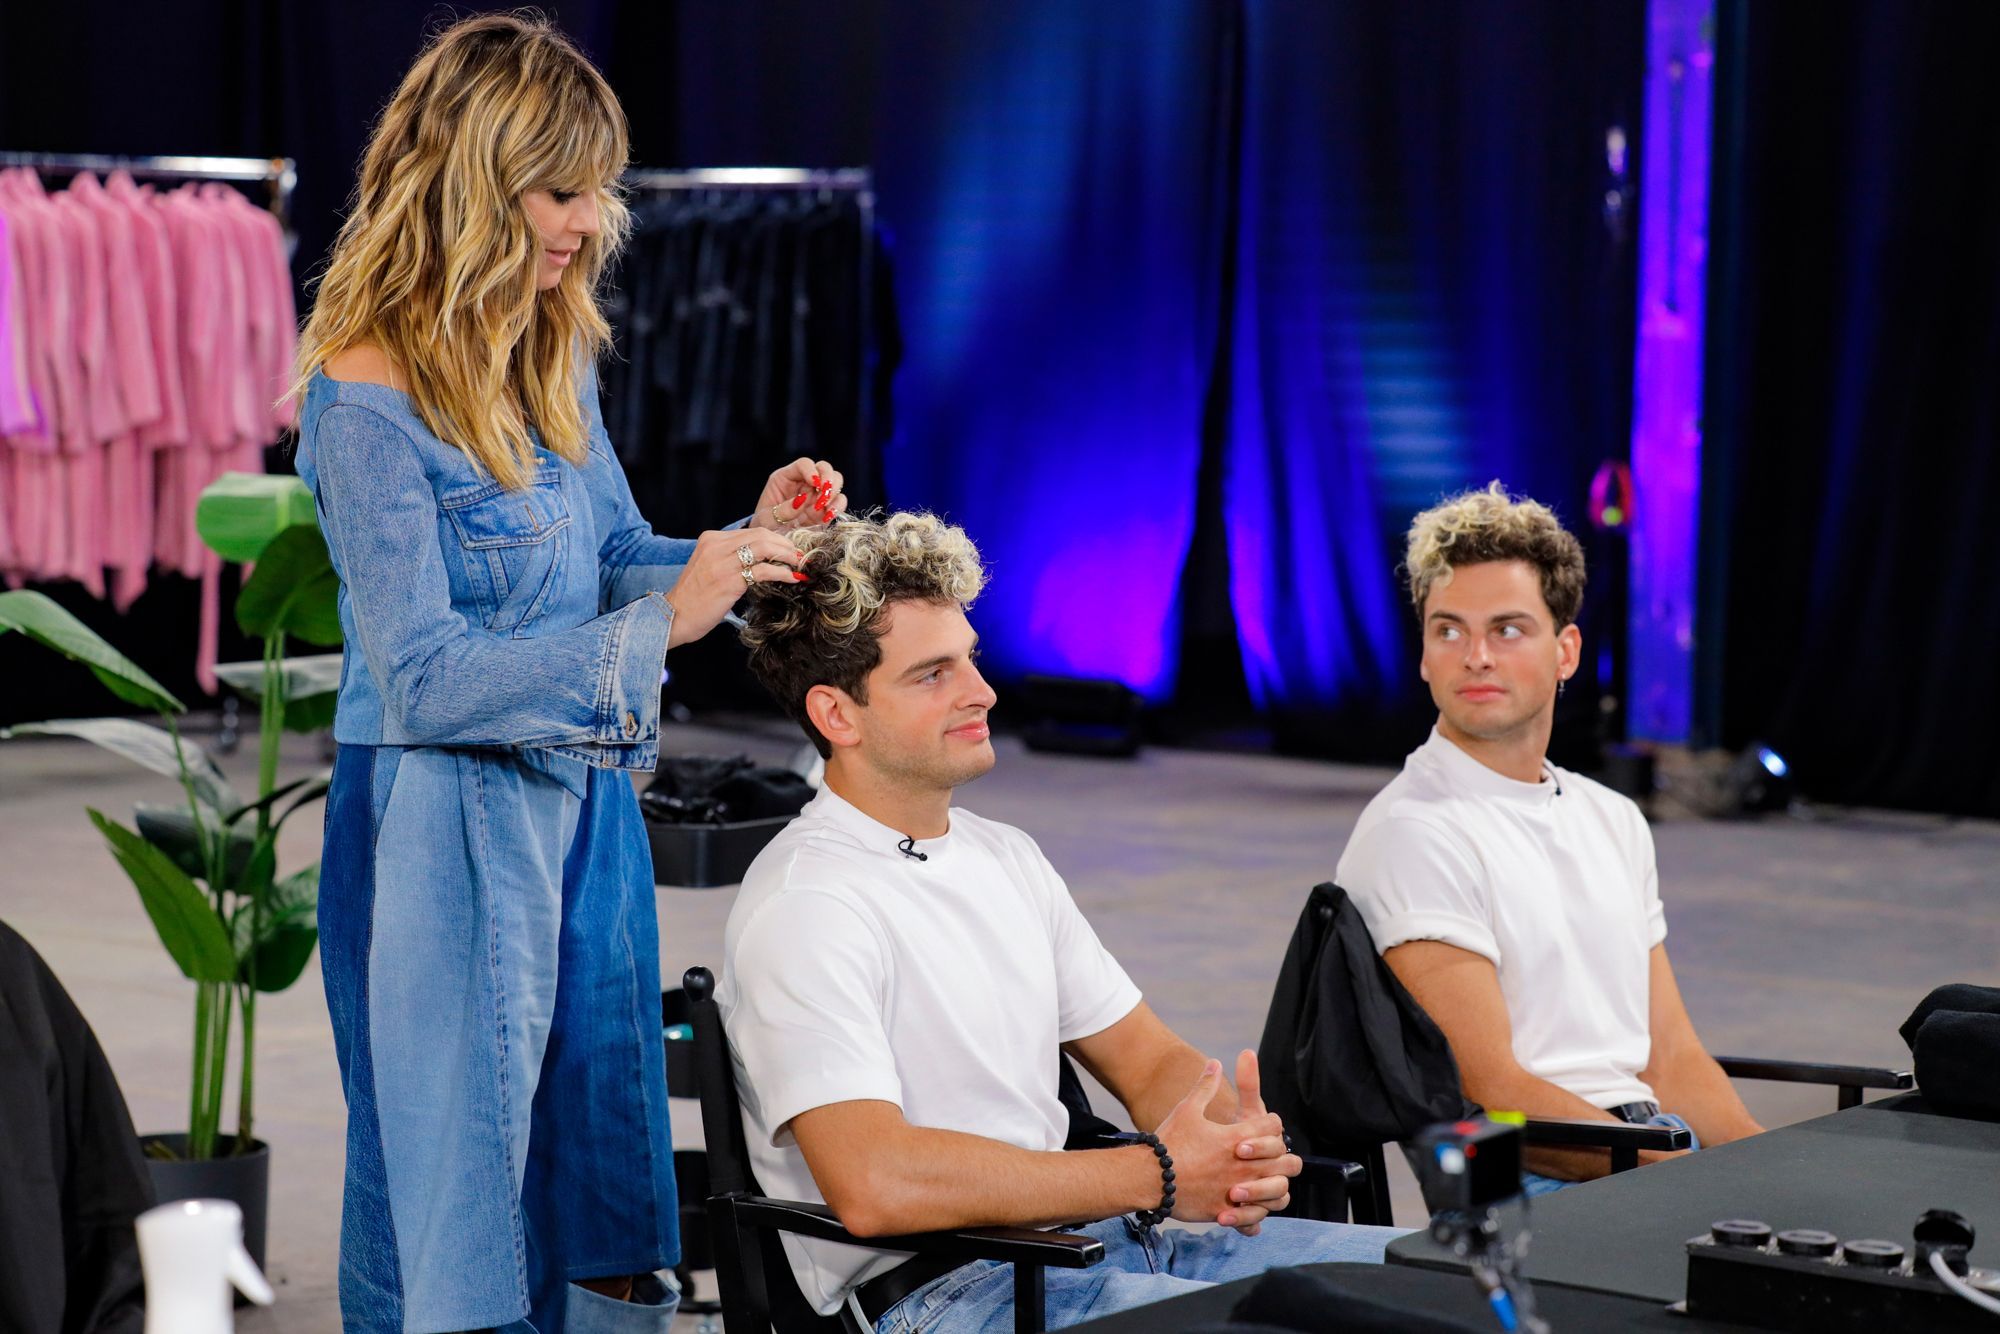 Umstyling-Premiere bei GNTM: Zum ersten Mal bekommen Männer von Heidi Klum ein Makeover. Müssen auch die Zwillinge Luka und Julian Haare lassen?